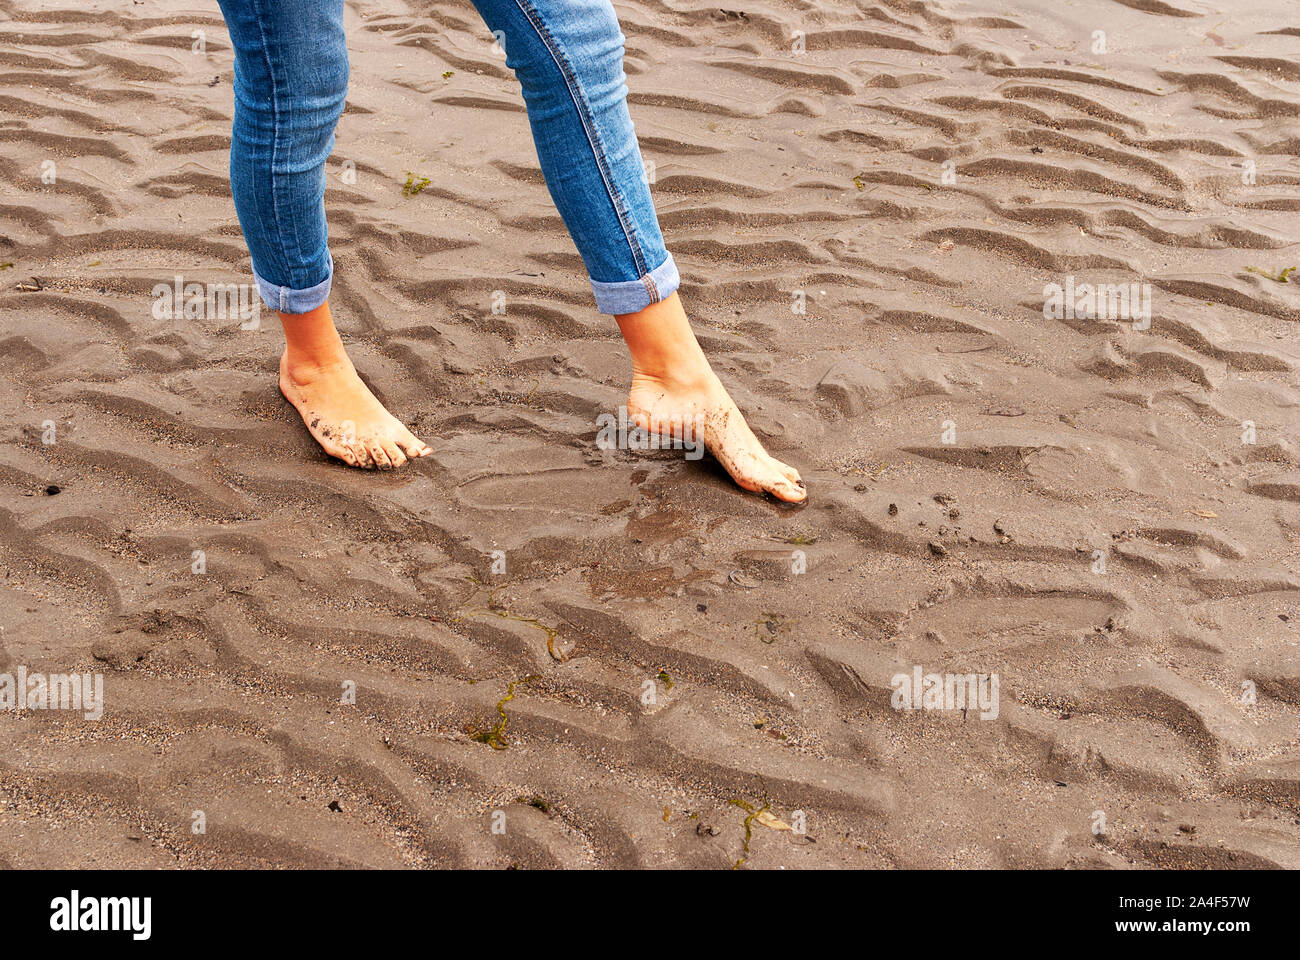 Junge Frau wandern und Spielen auf Sandstrand und hinterlassen Spuren im Strand. Killbrittain, Kilbrittain Strand, Irland. Stockfoto